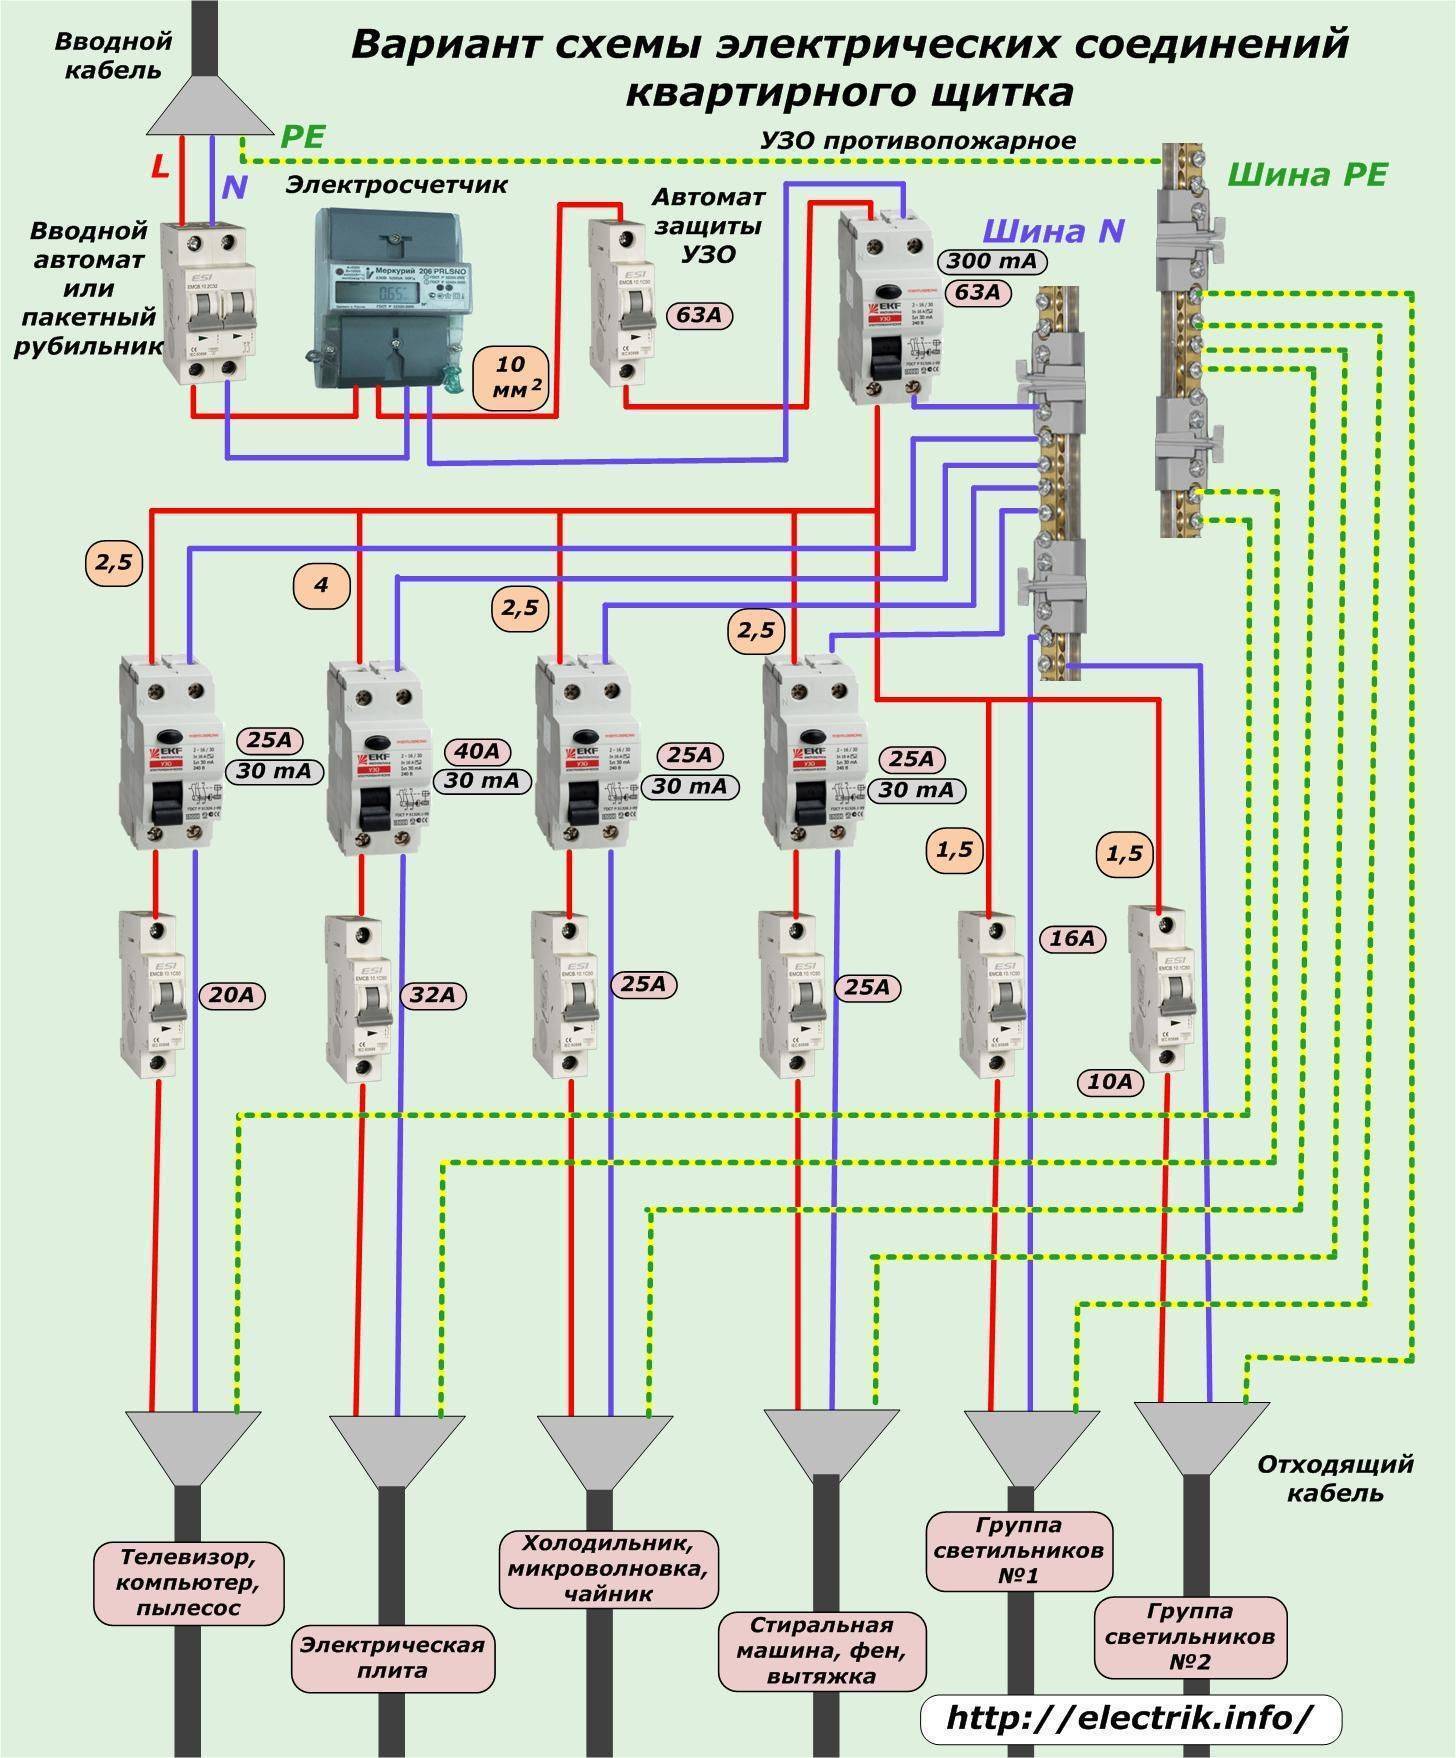 Схема подключения электрического щитка с автоматами